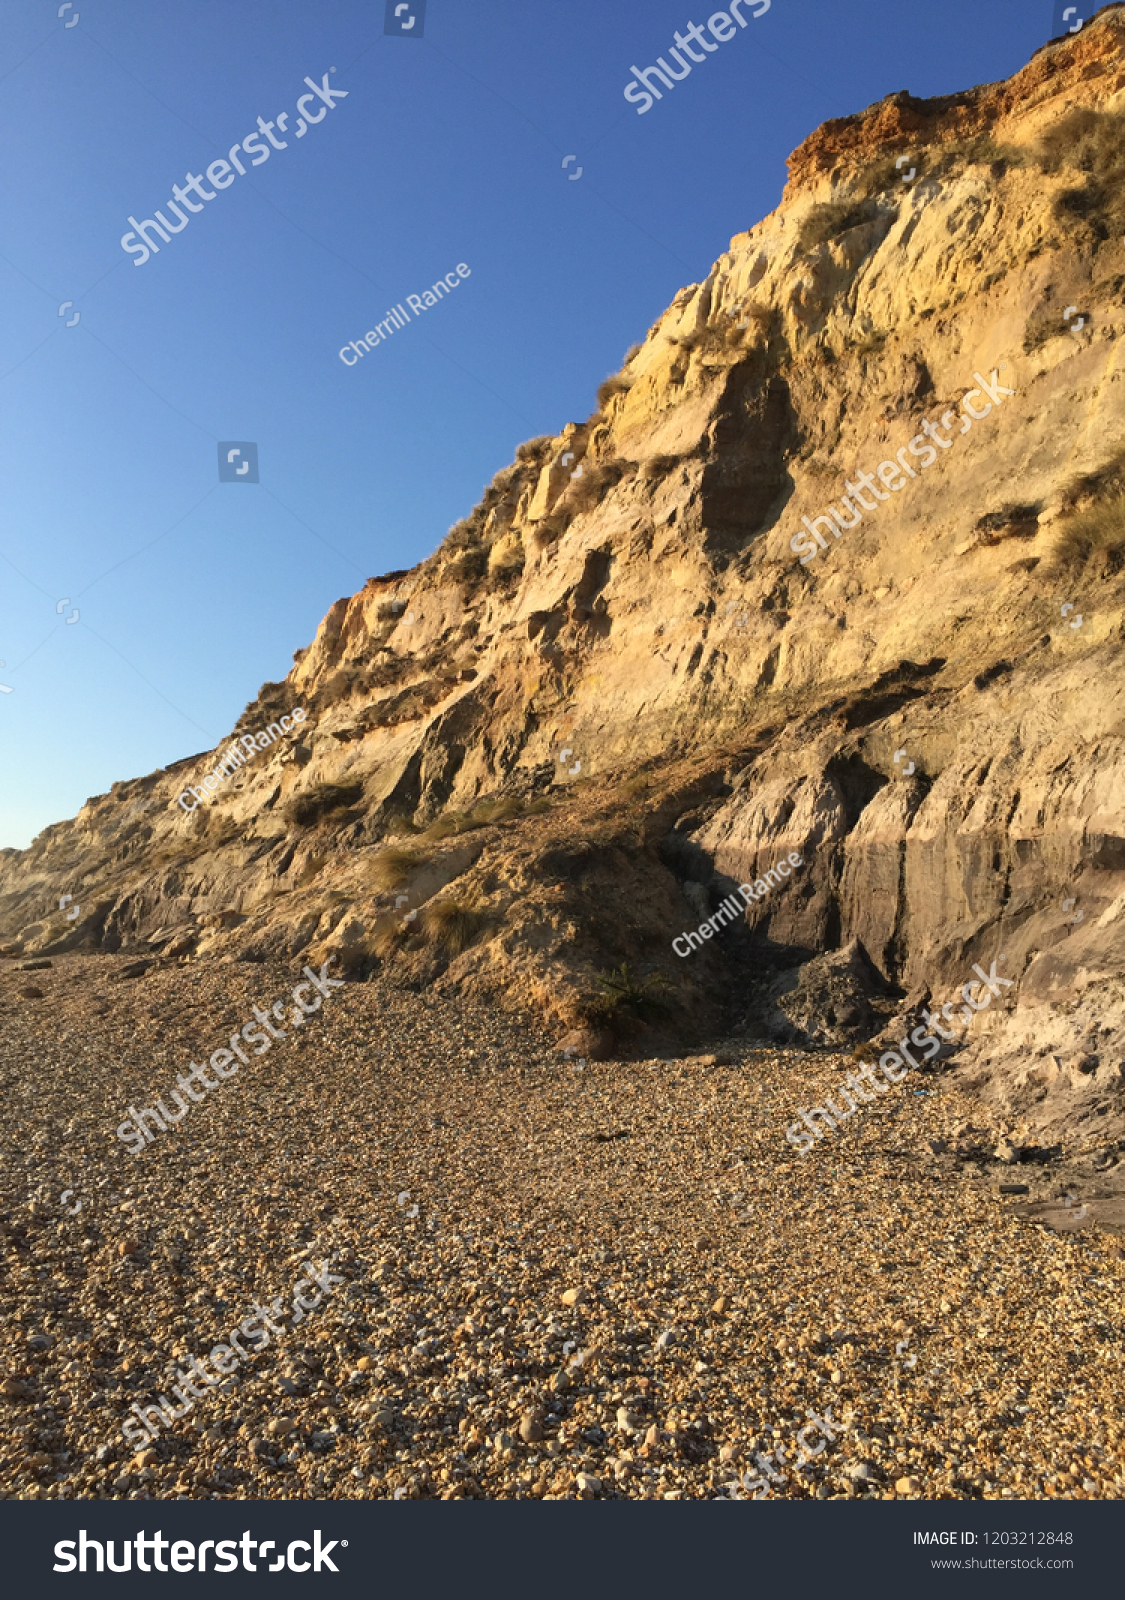 Hengistbury Head Cliffs #1203212848